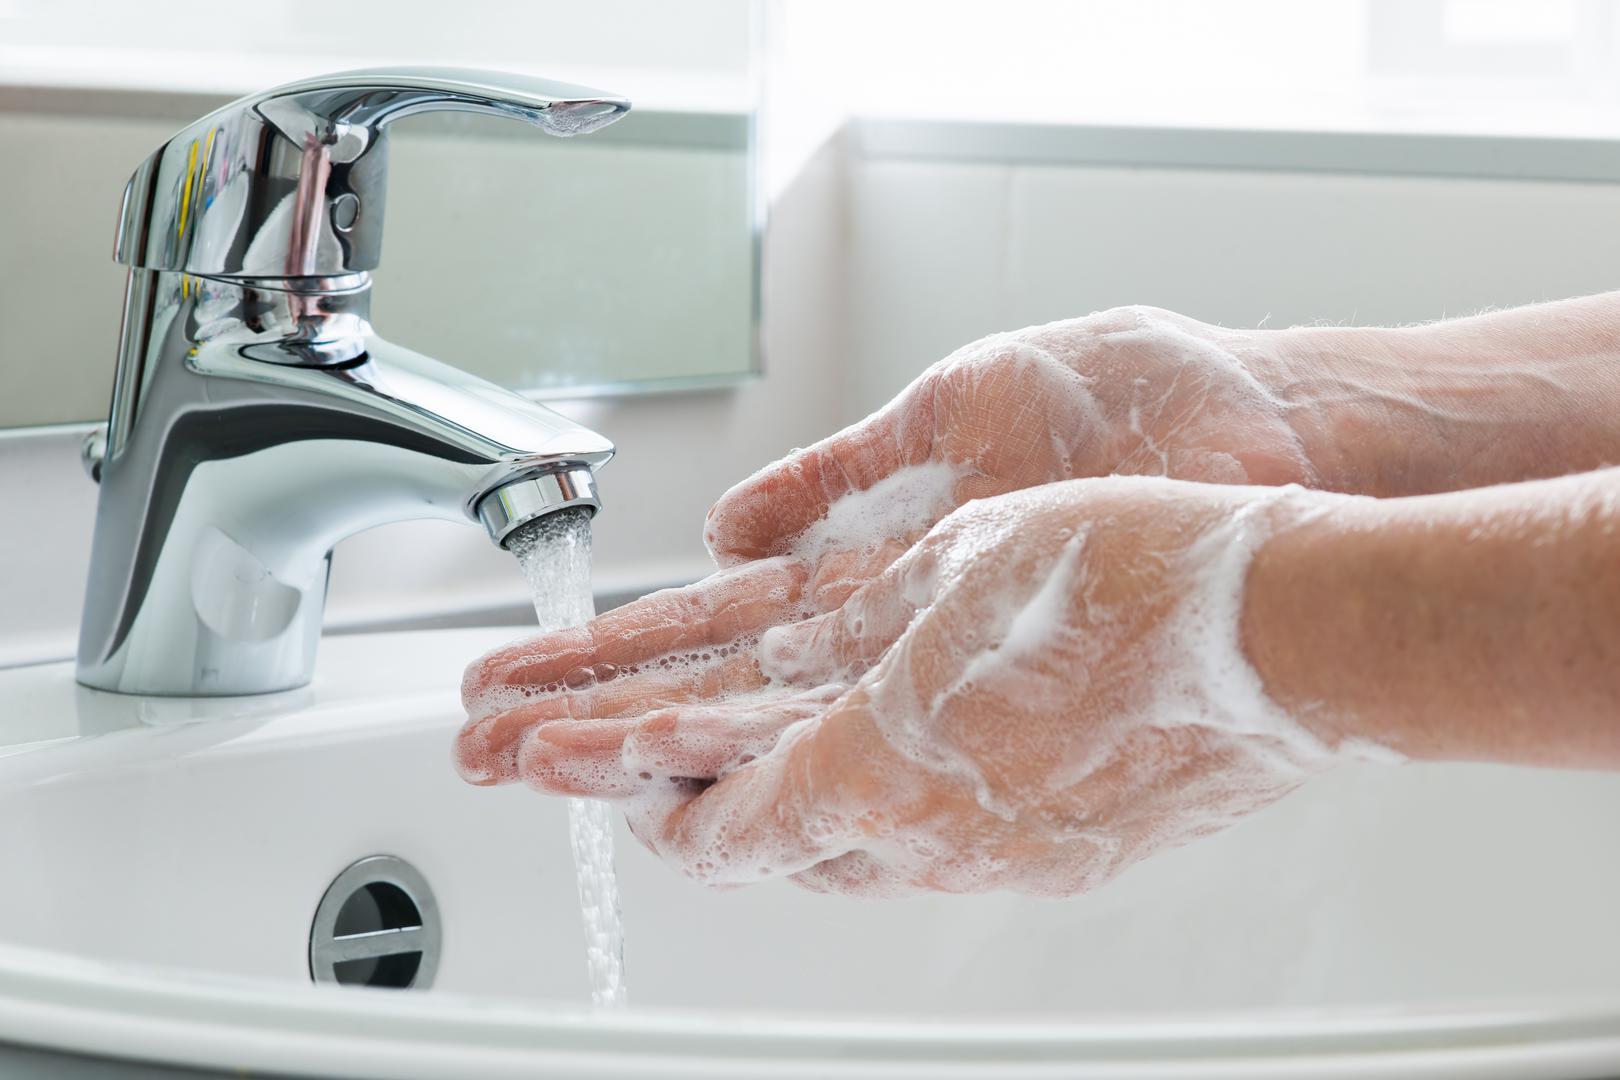 Često peru ruke - Najčešće zaraze dolaze preko ruku. često perite ruke, posebice prije jela i suzdržite se od diranja lica, posebice usta, s nečistim rukama. 